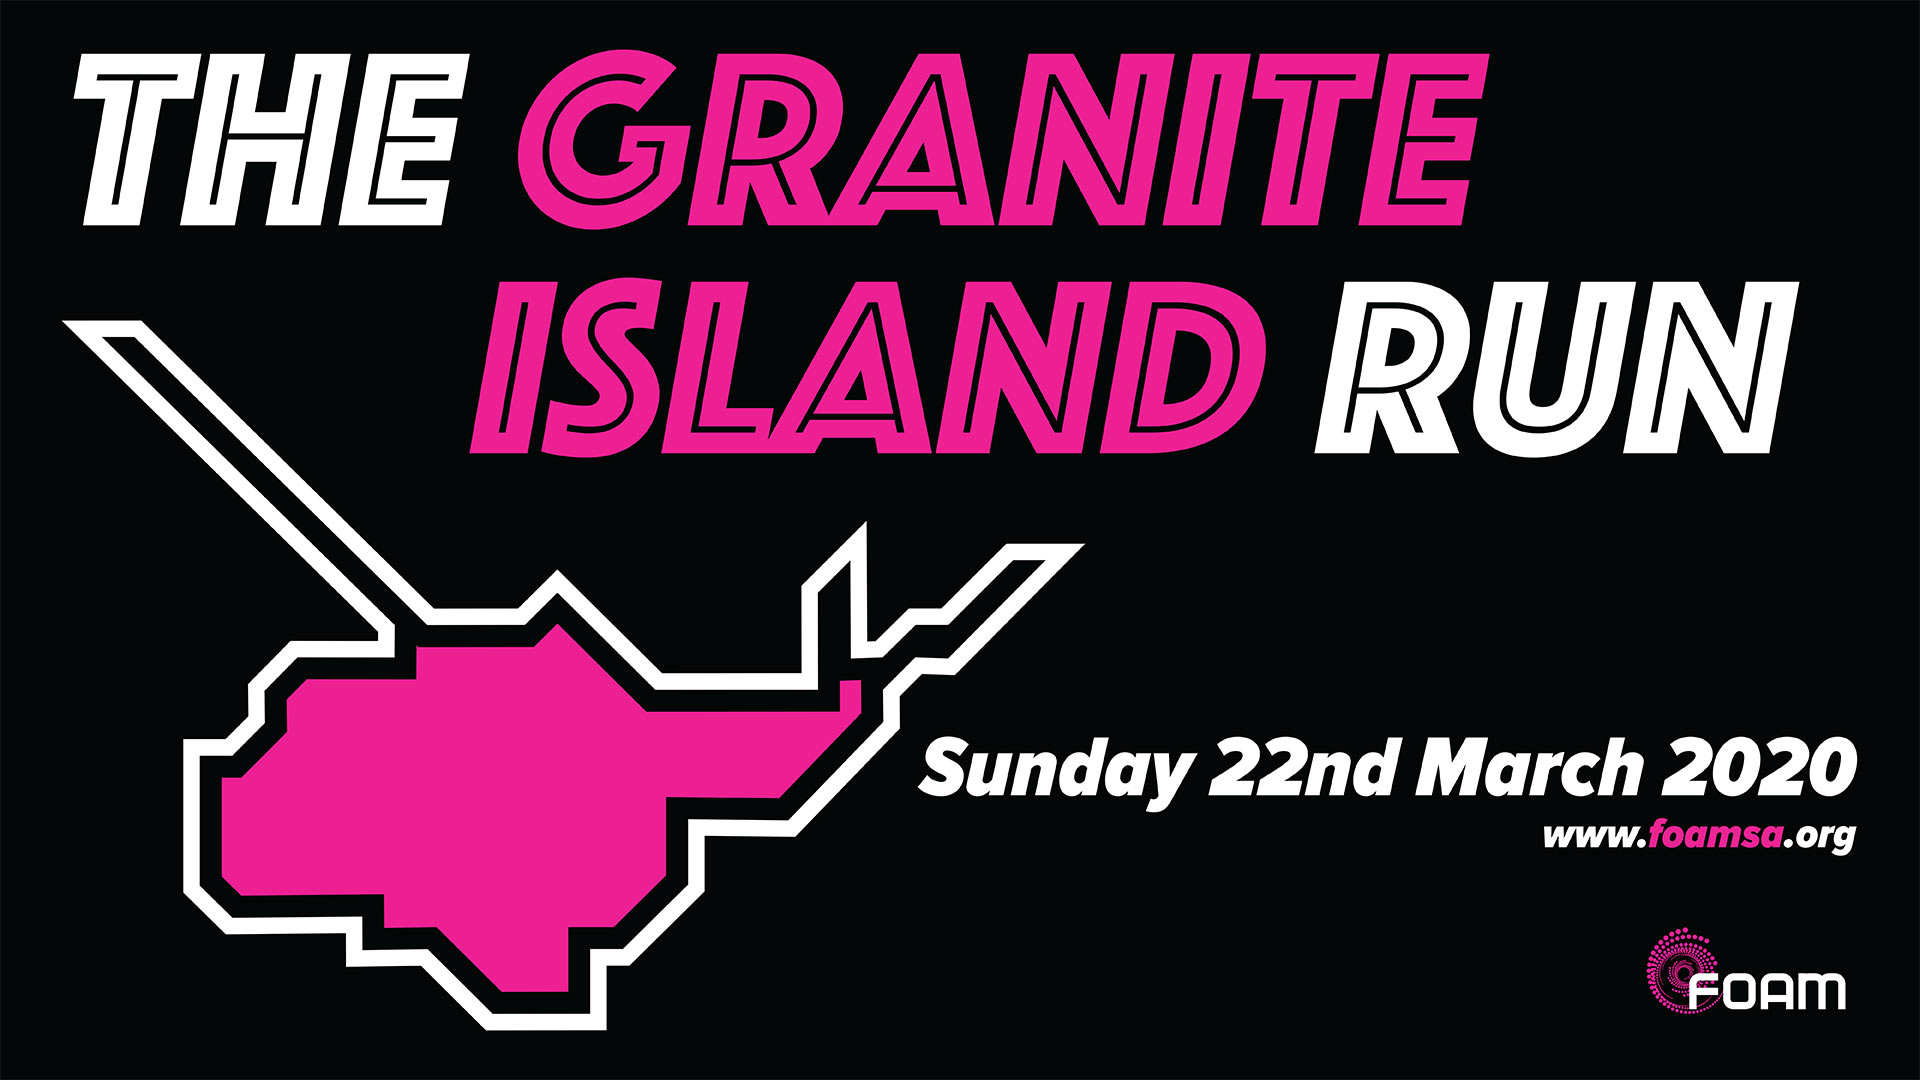 FOAM 2020 The Granite Island Run